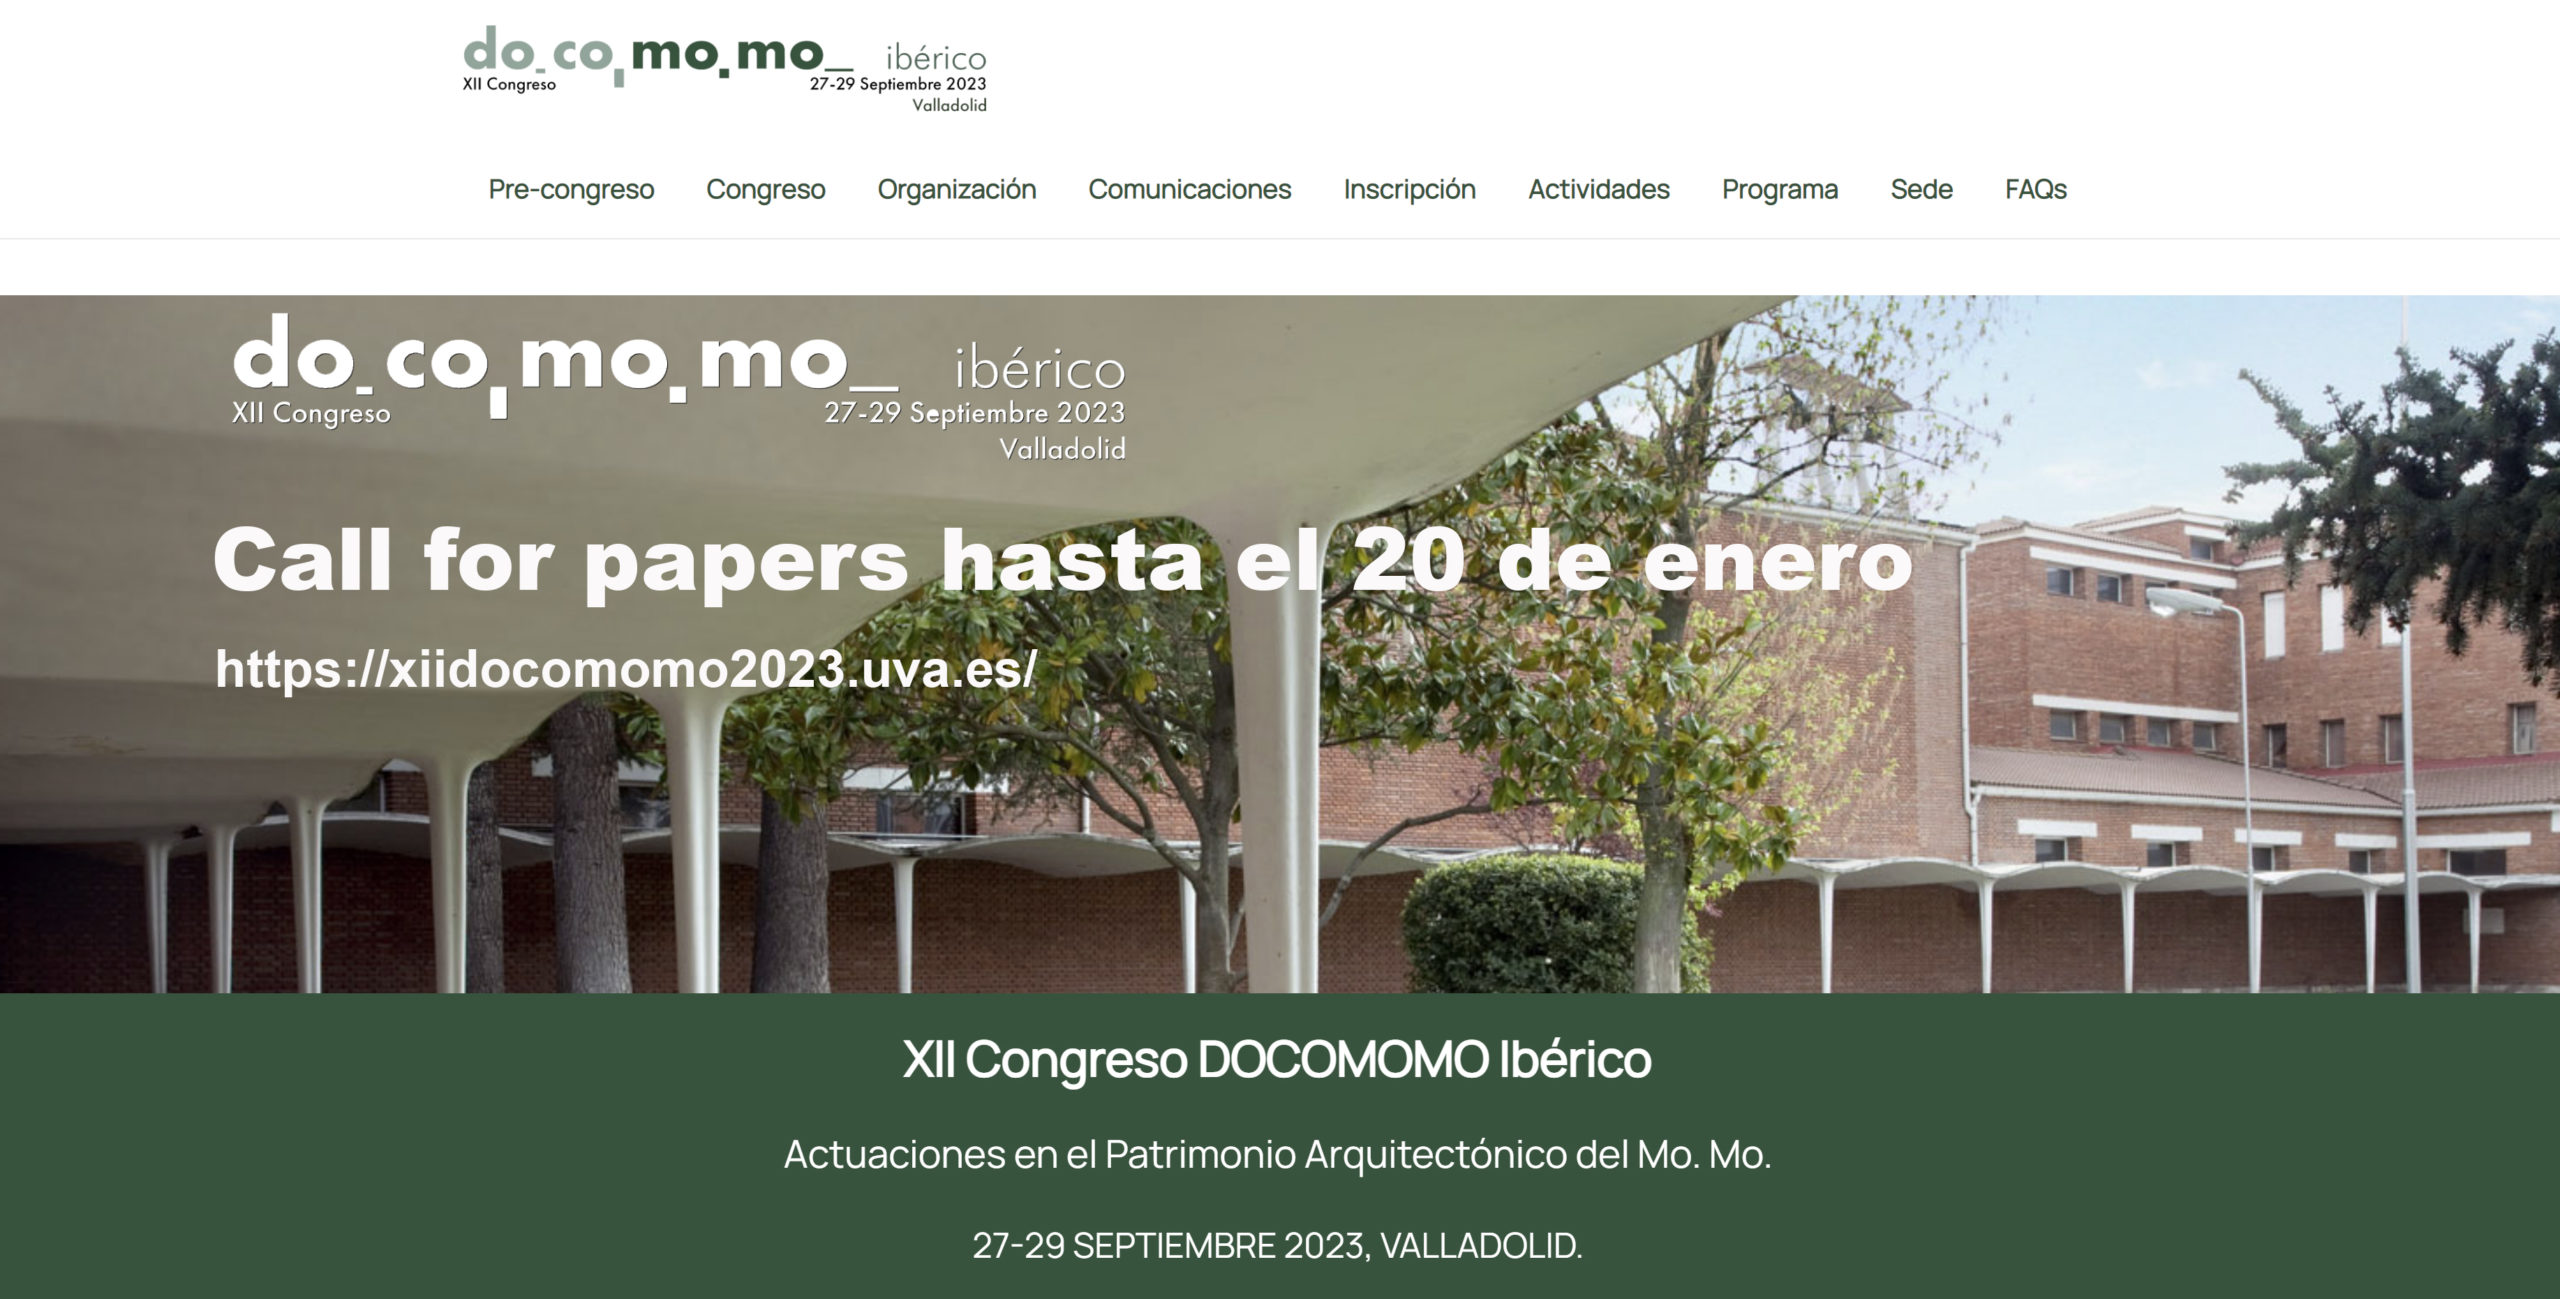 Llamada a comunicaciones del XII Congreso DOCOMOMO Ibérico